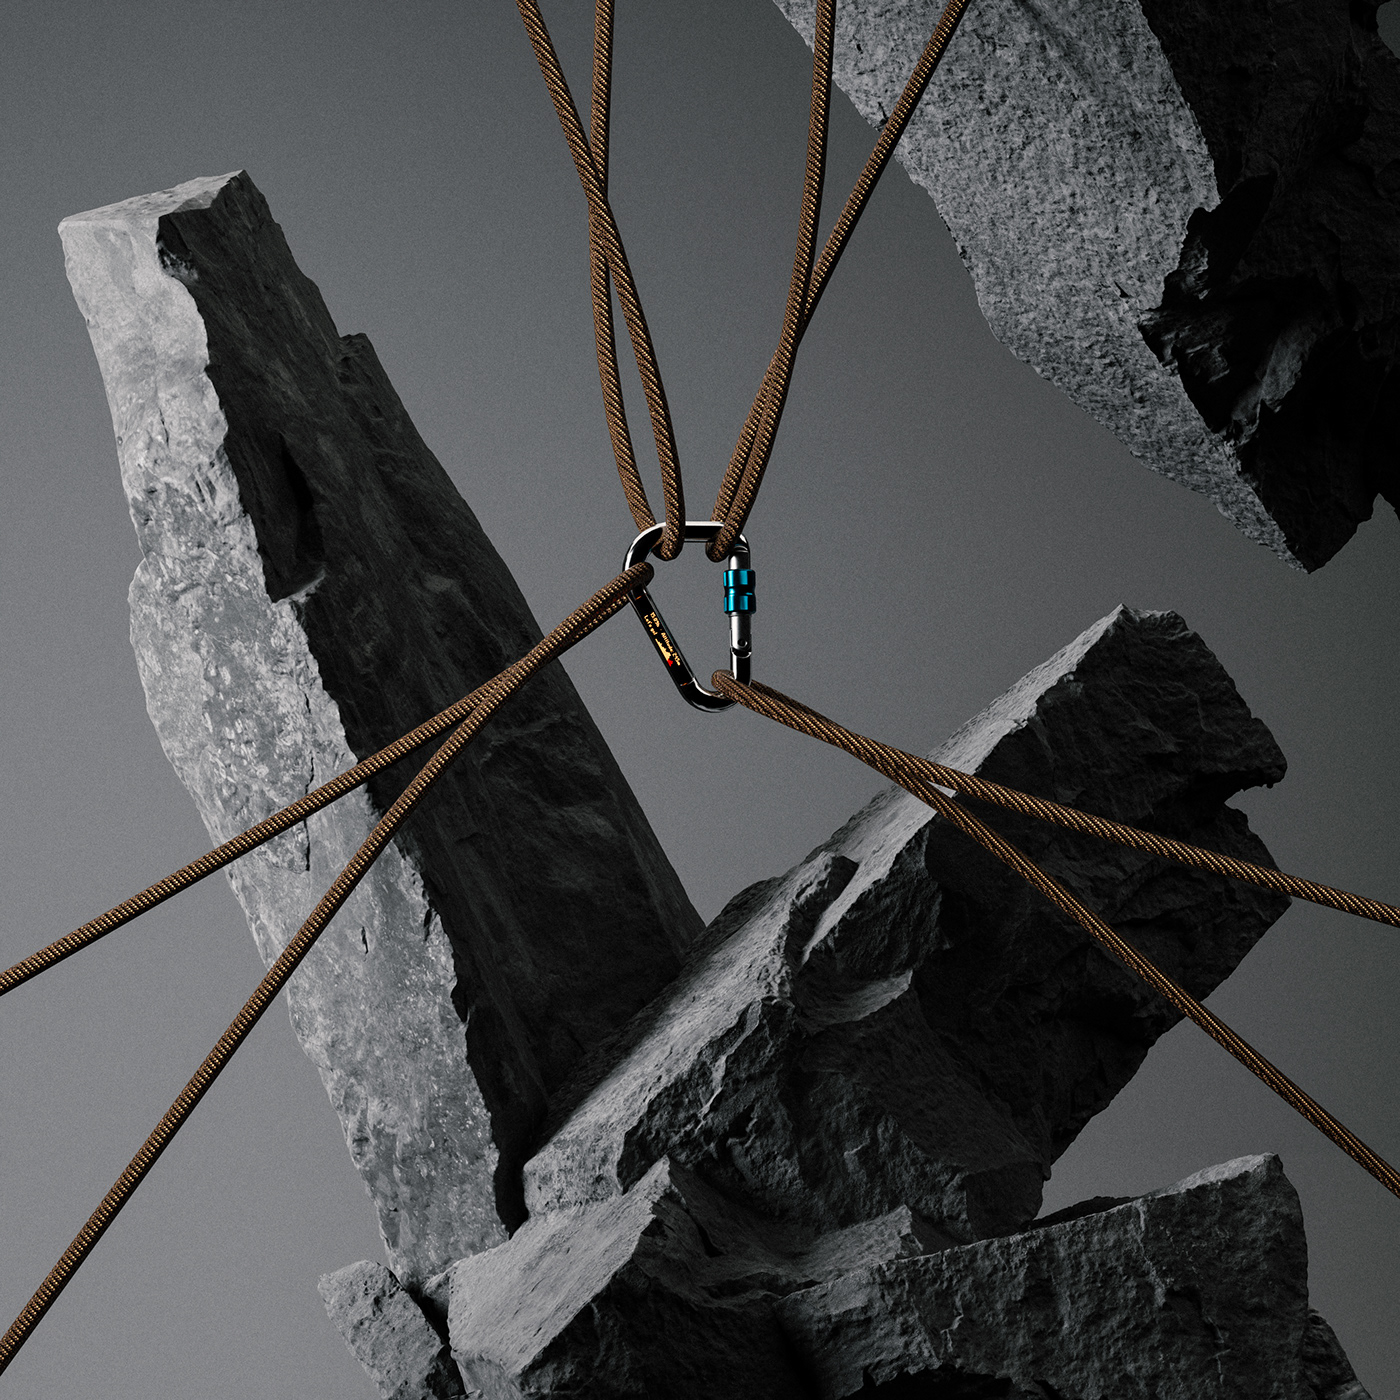 carabiner CGI sci-fi tech Gadget taitopia product visualization climbing climb mosqueton